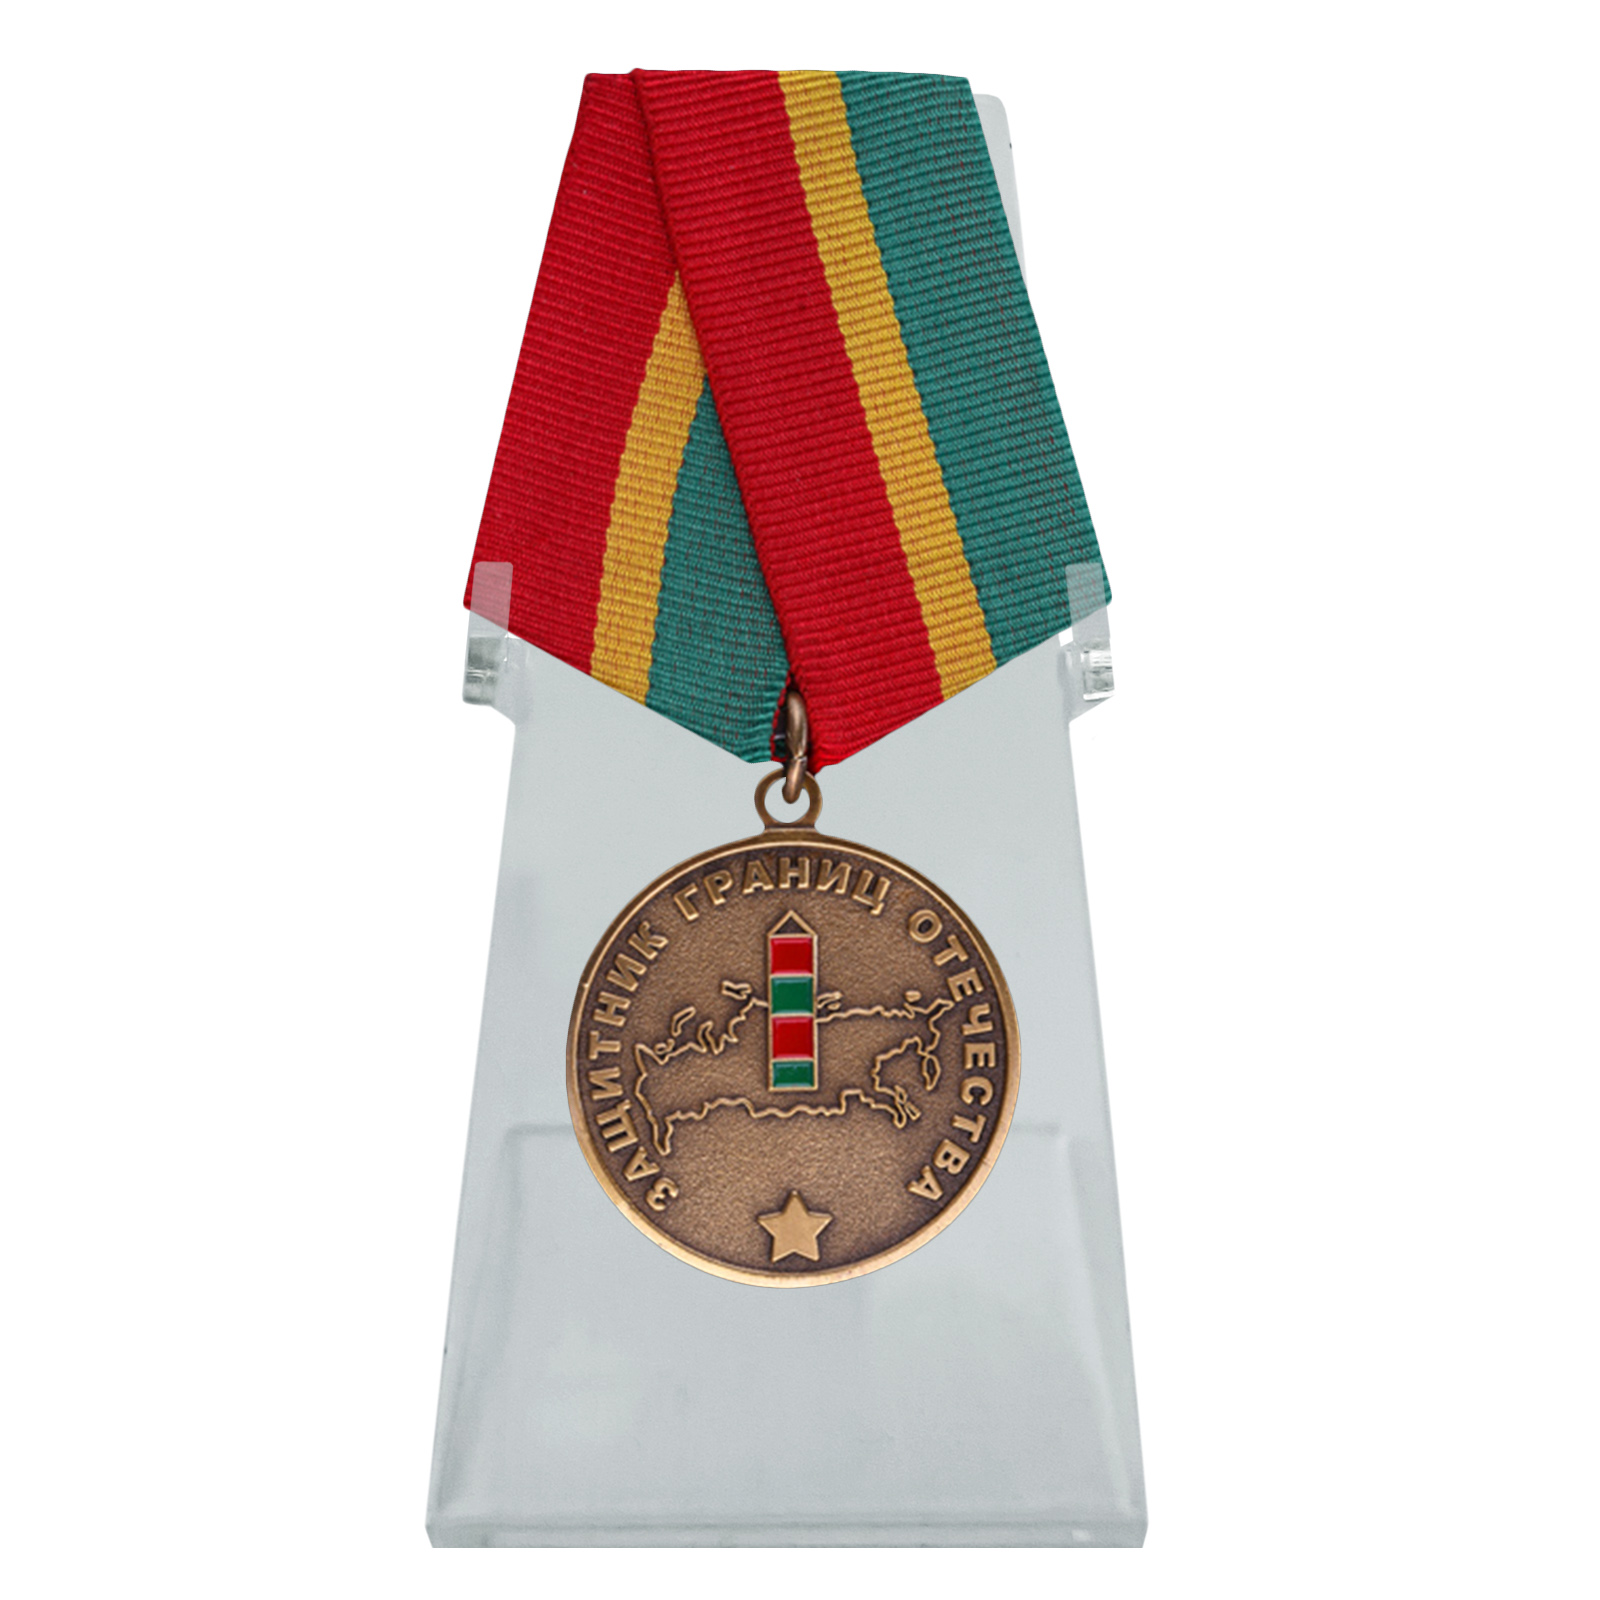 Медаль "Защитник границ Отечества" на подставке